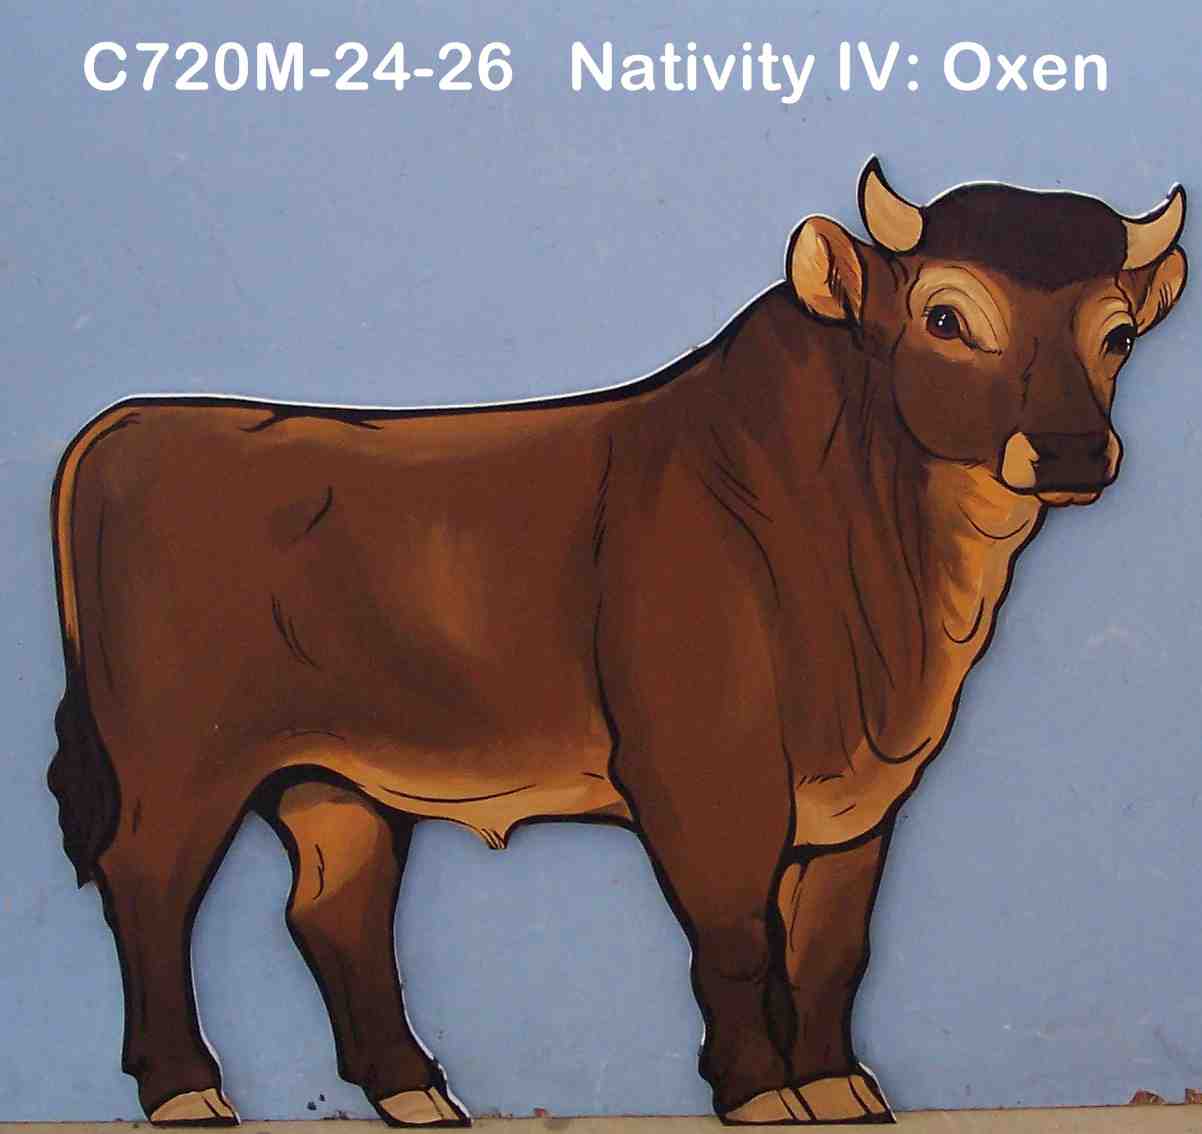 C720MNativity IV: Oxen